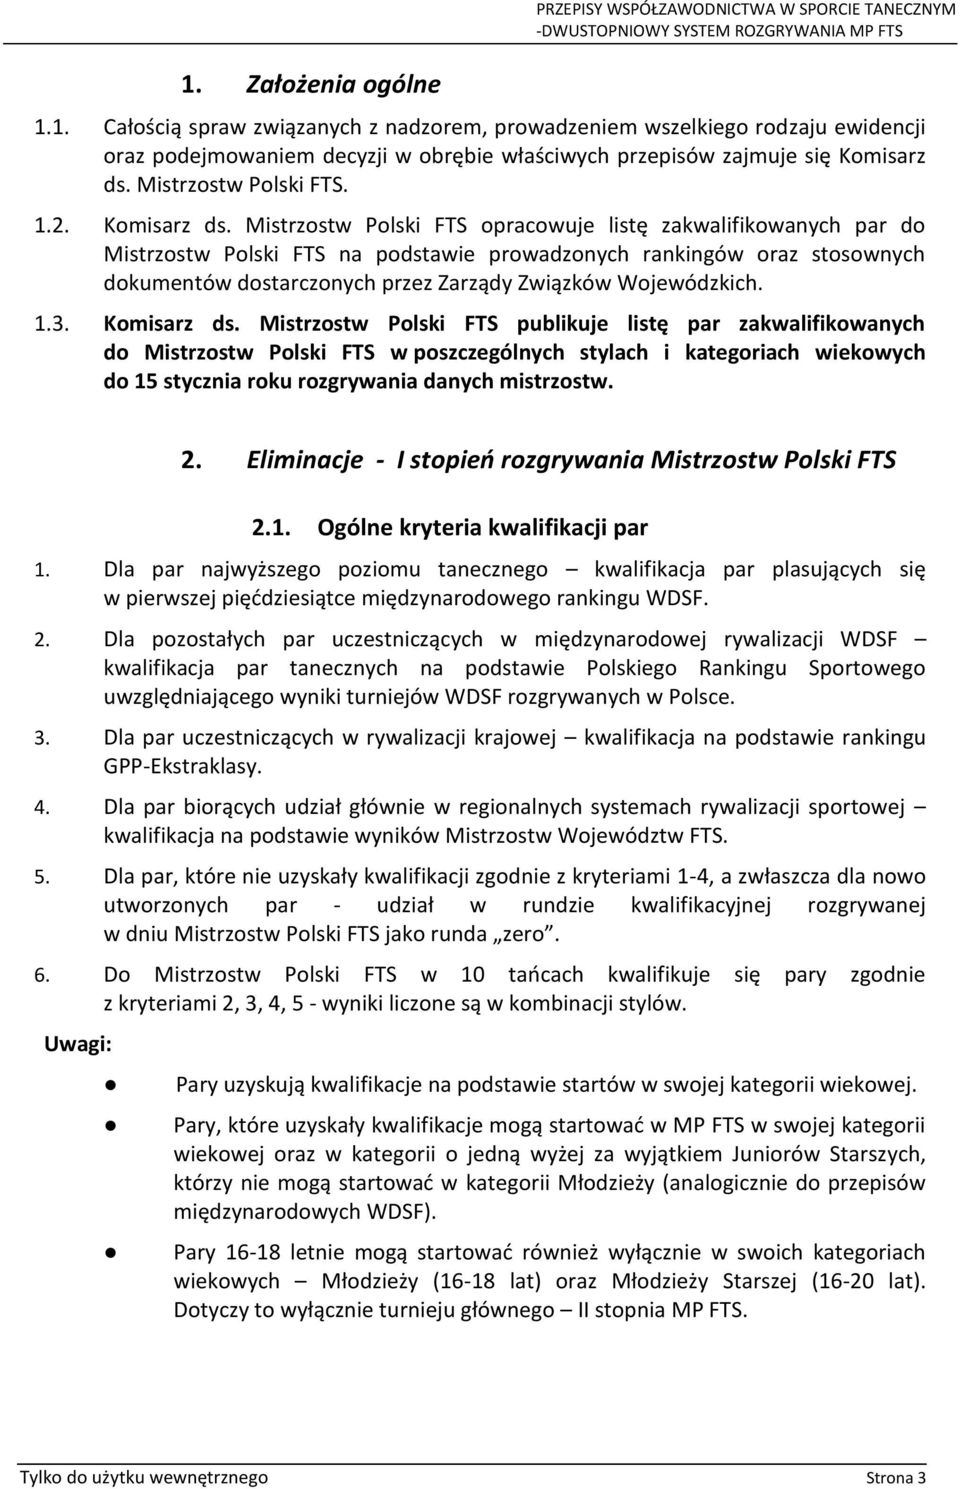 Mistrzostw Polski FTS opracowuje listę zakwalifikowanych par do Mistrzostw Polski FTS na podstawie prowadzonych rankingów oraz stosownych dokumentów dostarczonych przez Zarządy Związków Wojewódzkich.